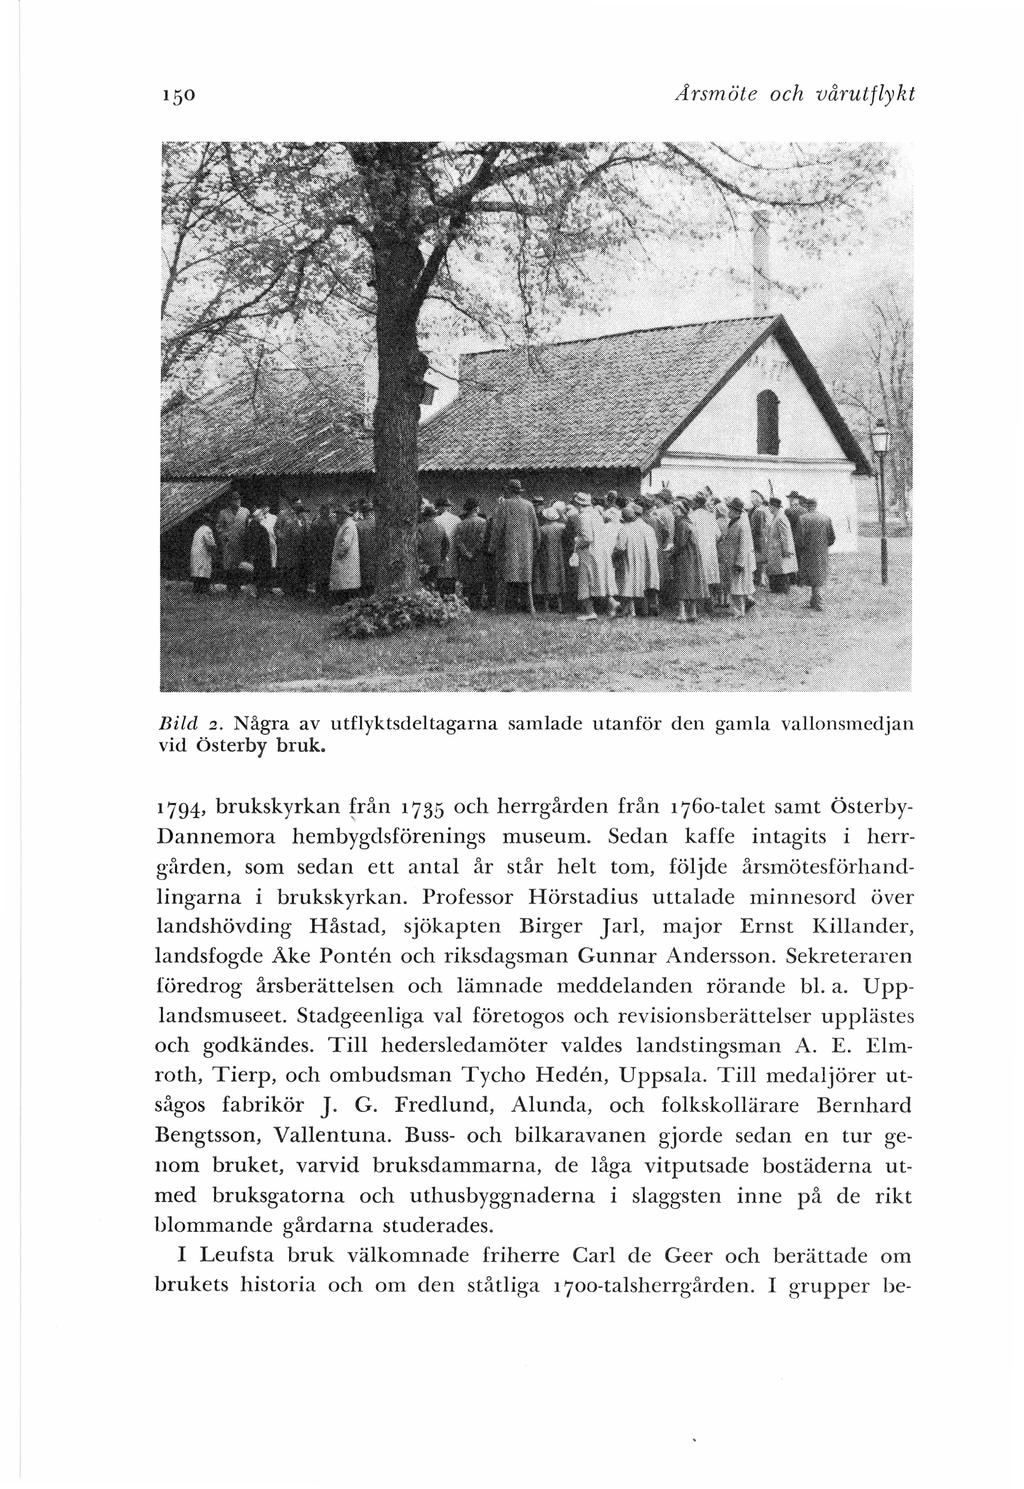 Ärsmöte och vårutflykt 2. Några av utflyktsdeltagarna samlade utanför den gamla vallonsmedjan vid österby bruk. Bild 1794, brukskyrkan!